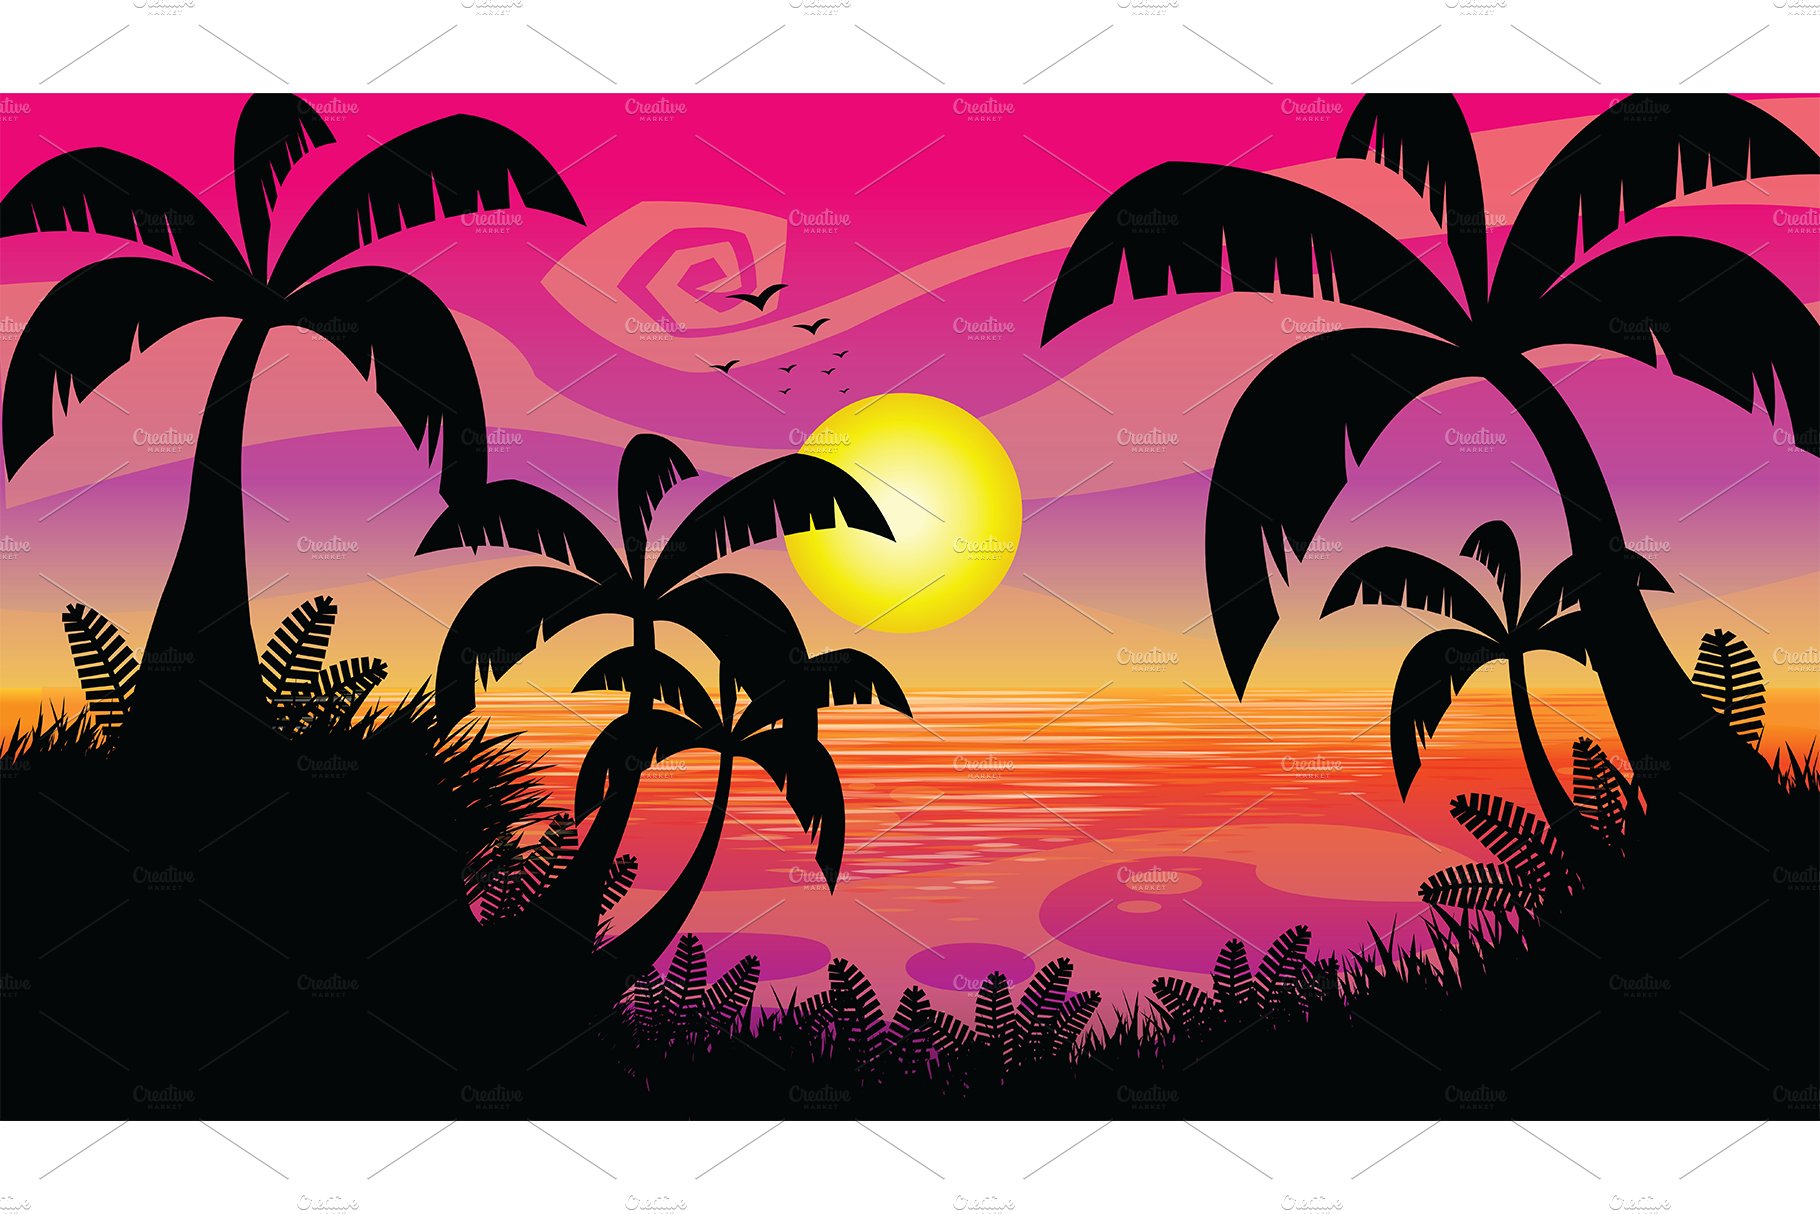 Pink Sunset Cartoon Flat Design cover image.